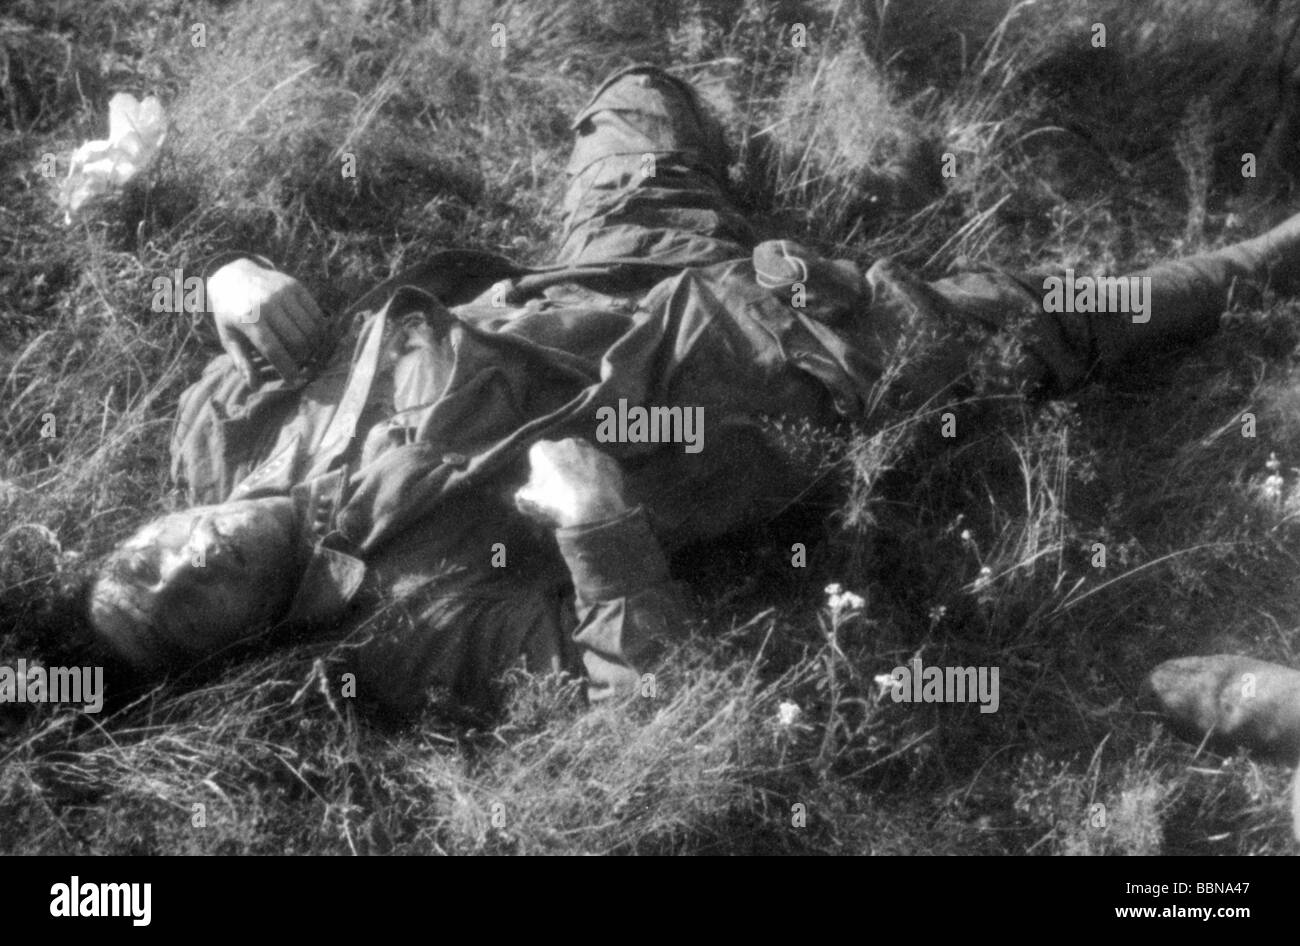 Événements, seconde Guerre mondiale / seconde Guerre mondiale, Russie, soldats tombés / corps morts, aviateur soviétique tombé, Dukhovshchina près de Smolensk, Russie, 26.7.1941, Banque D'Images